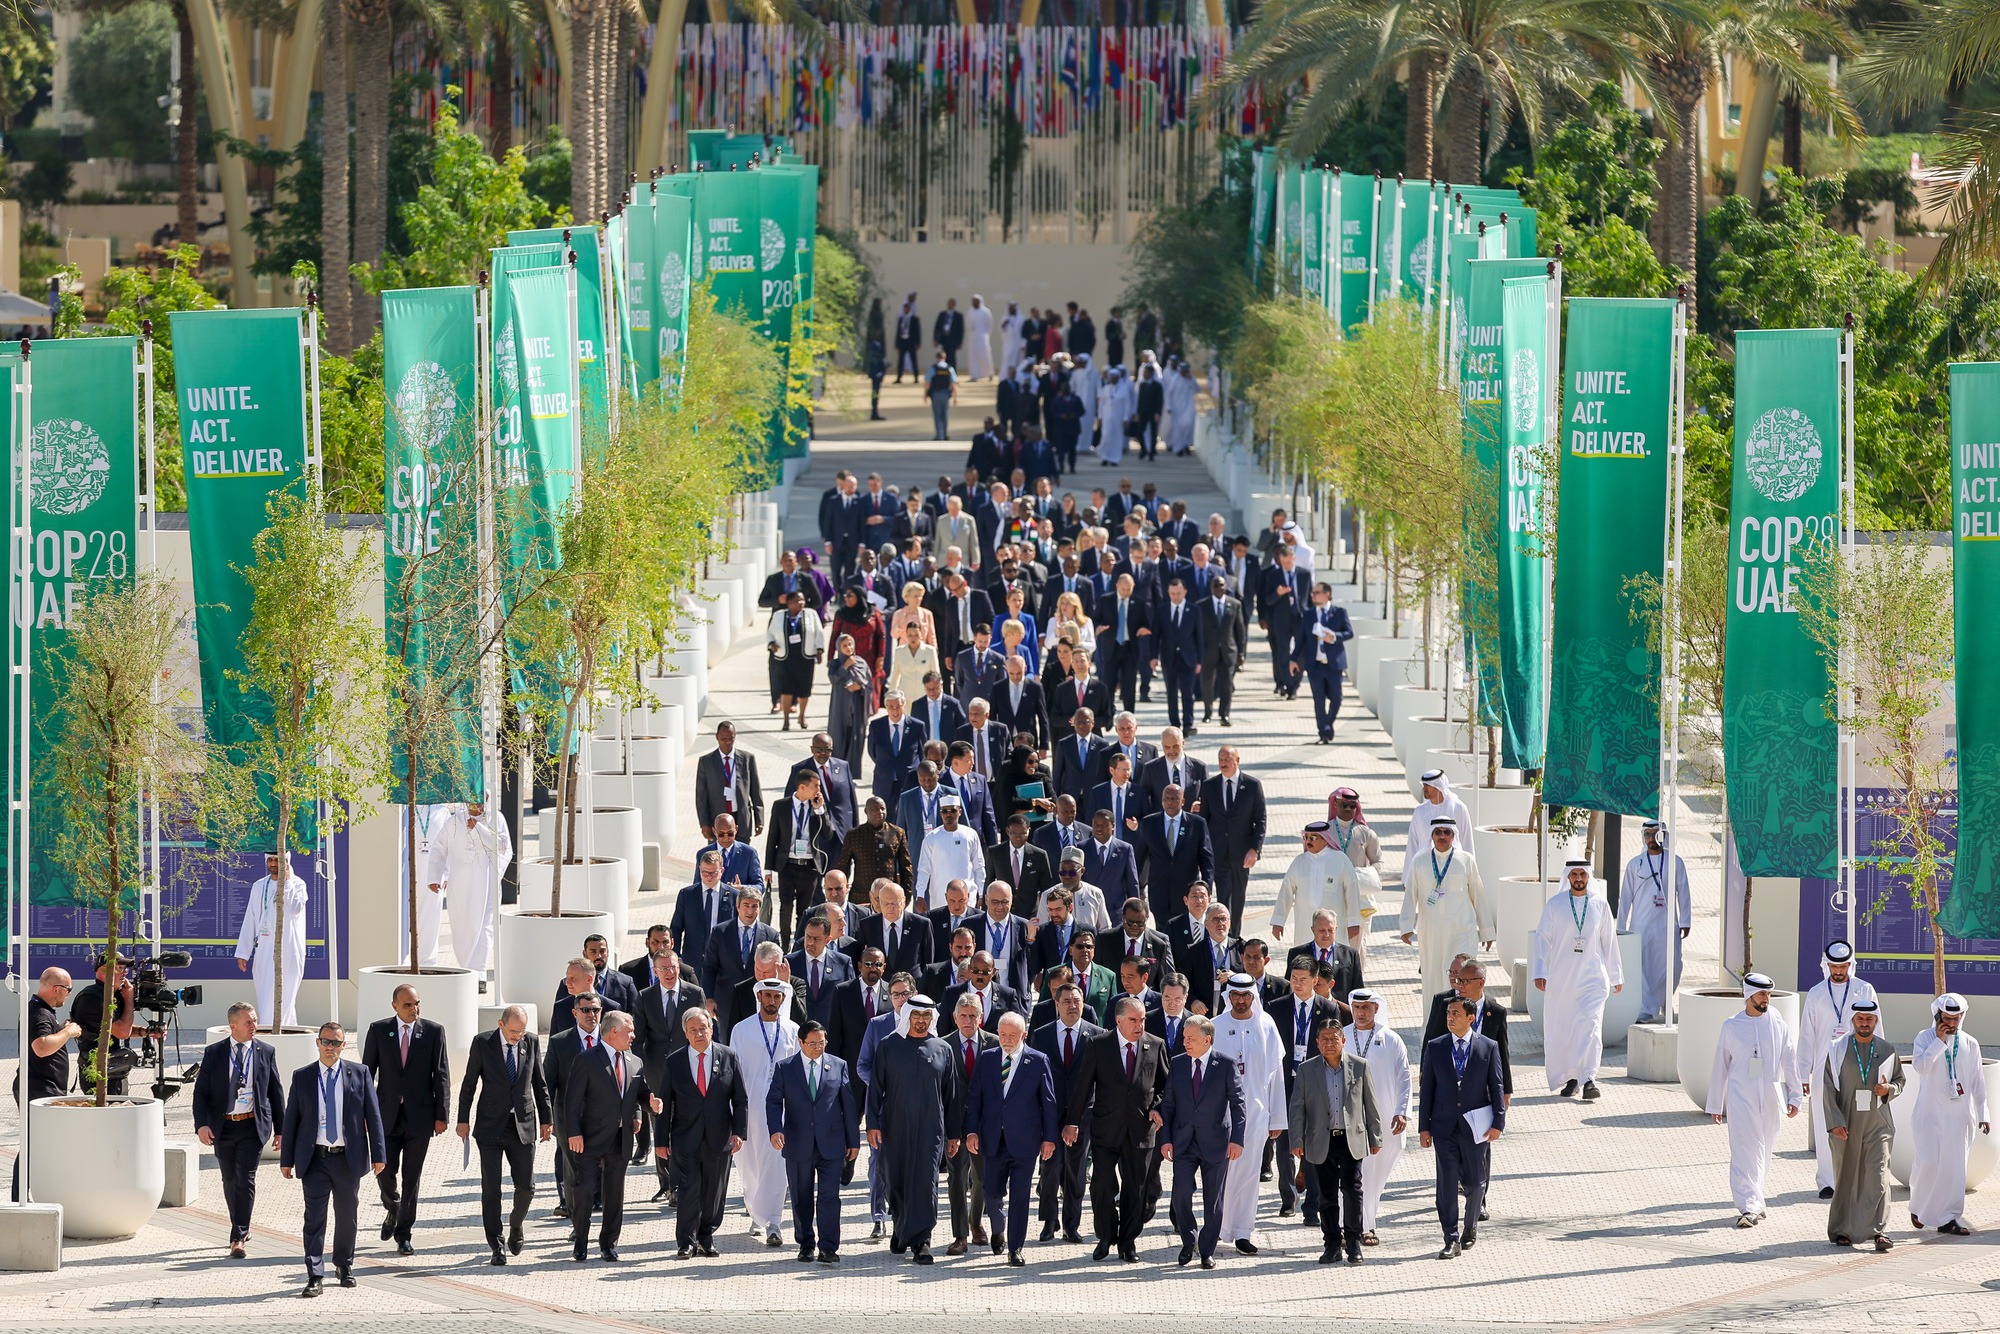 Hình ảnh báo chí 24h: Thủ tướng Phạm Minh Chính tản bộ cùng các nhà lãnh đạo dự hội nghị COP28 - Ảnh 2.